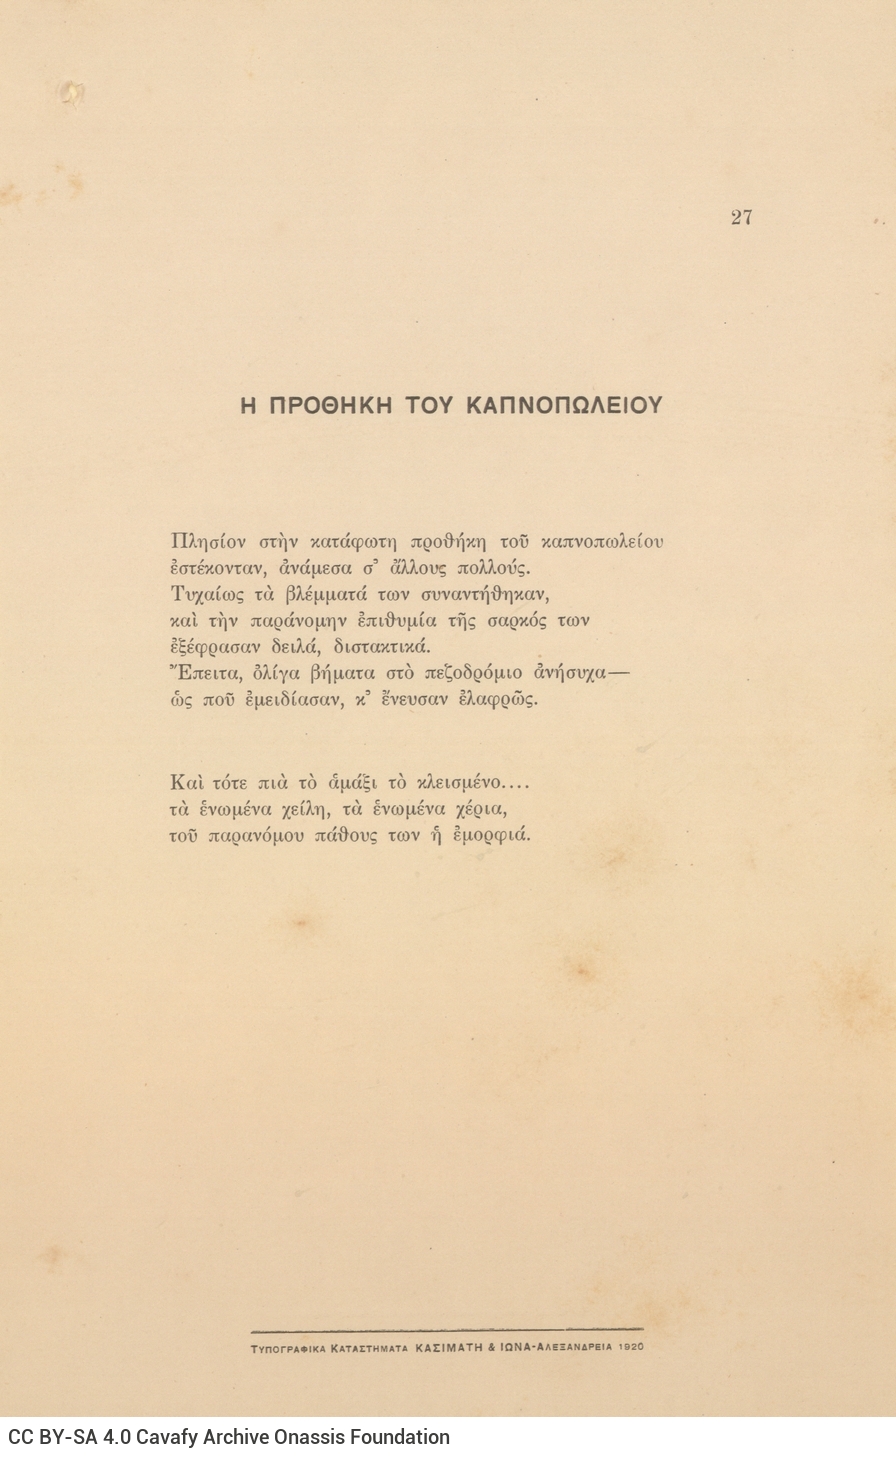 Ποιητική συλλογή του Καβάφη (Γ5), αποτελούμενη από 69 ποιήματα σε 78 λυτ